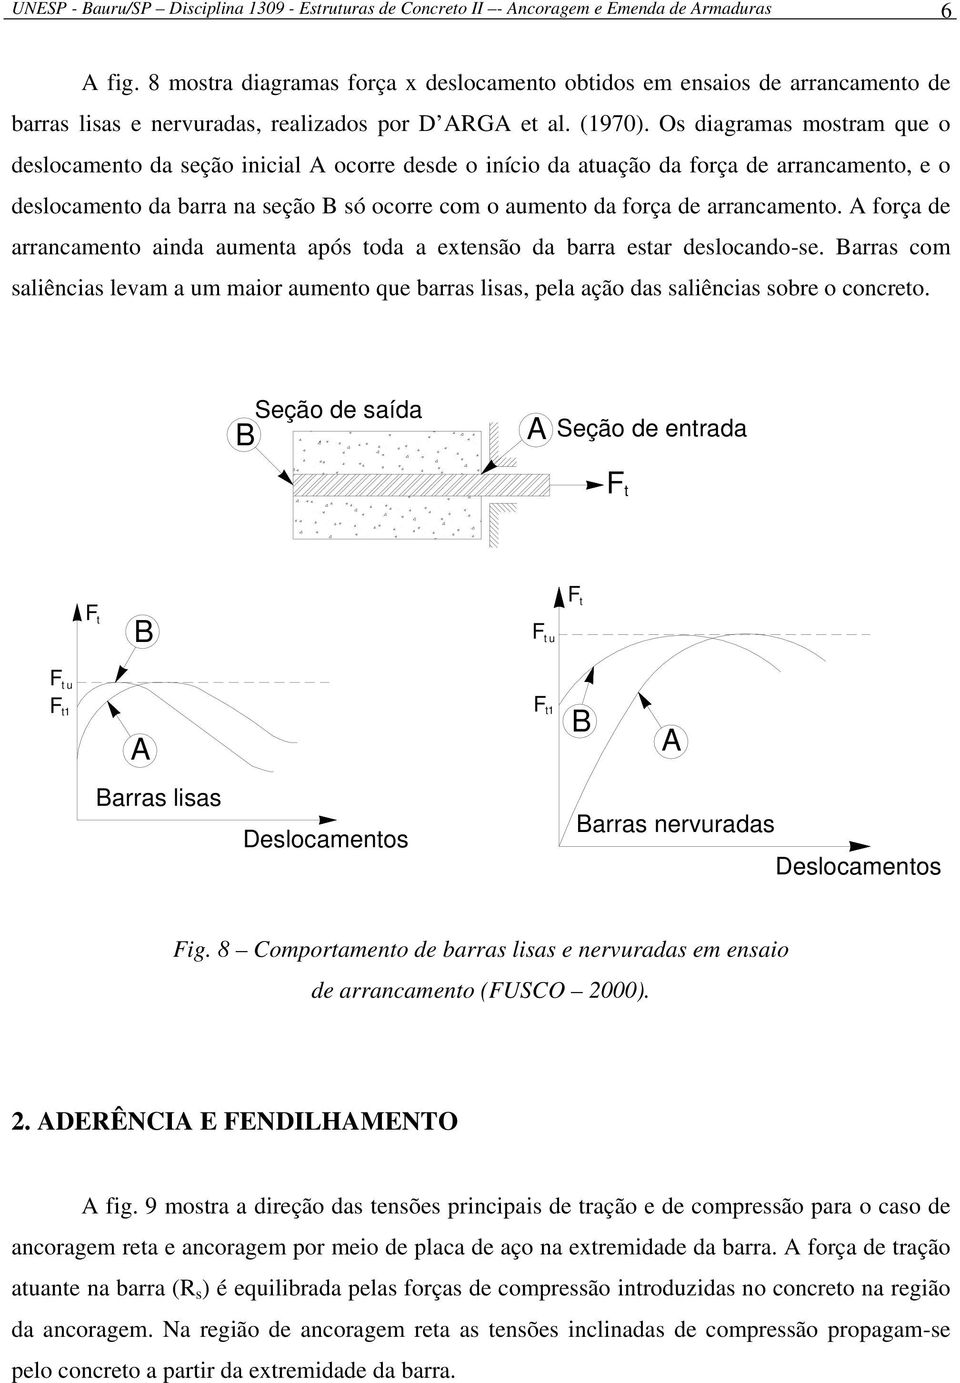 Os diagramas mostram que o deslocamento da seção inicial A ocorre desde o início da atuação da força de arrancamento, e o deslocamento da barra na seção B só ocorre com o aumento da força de